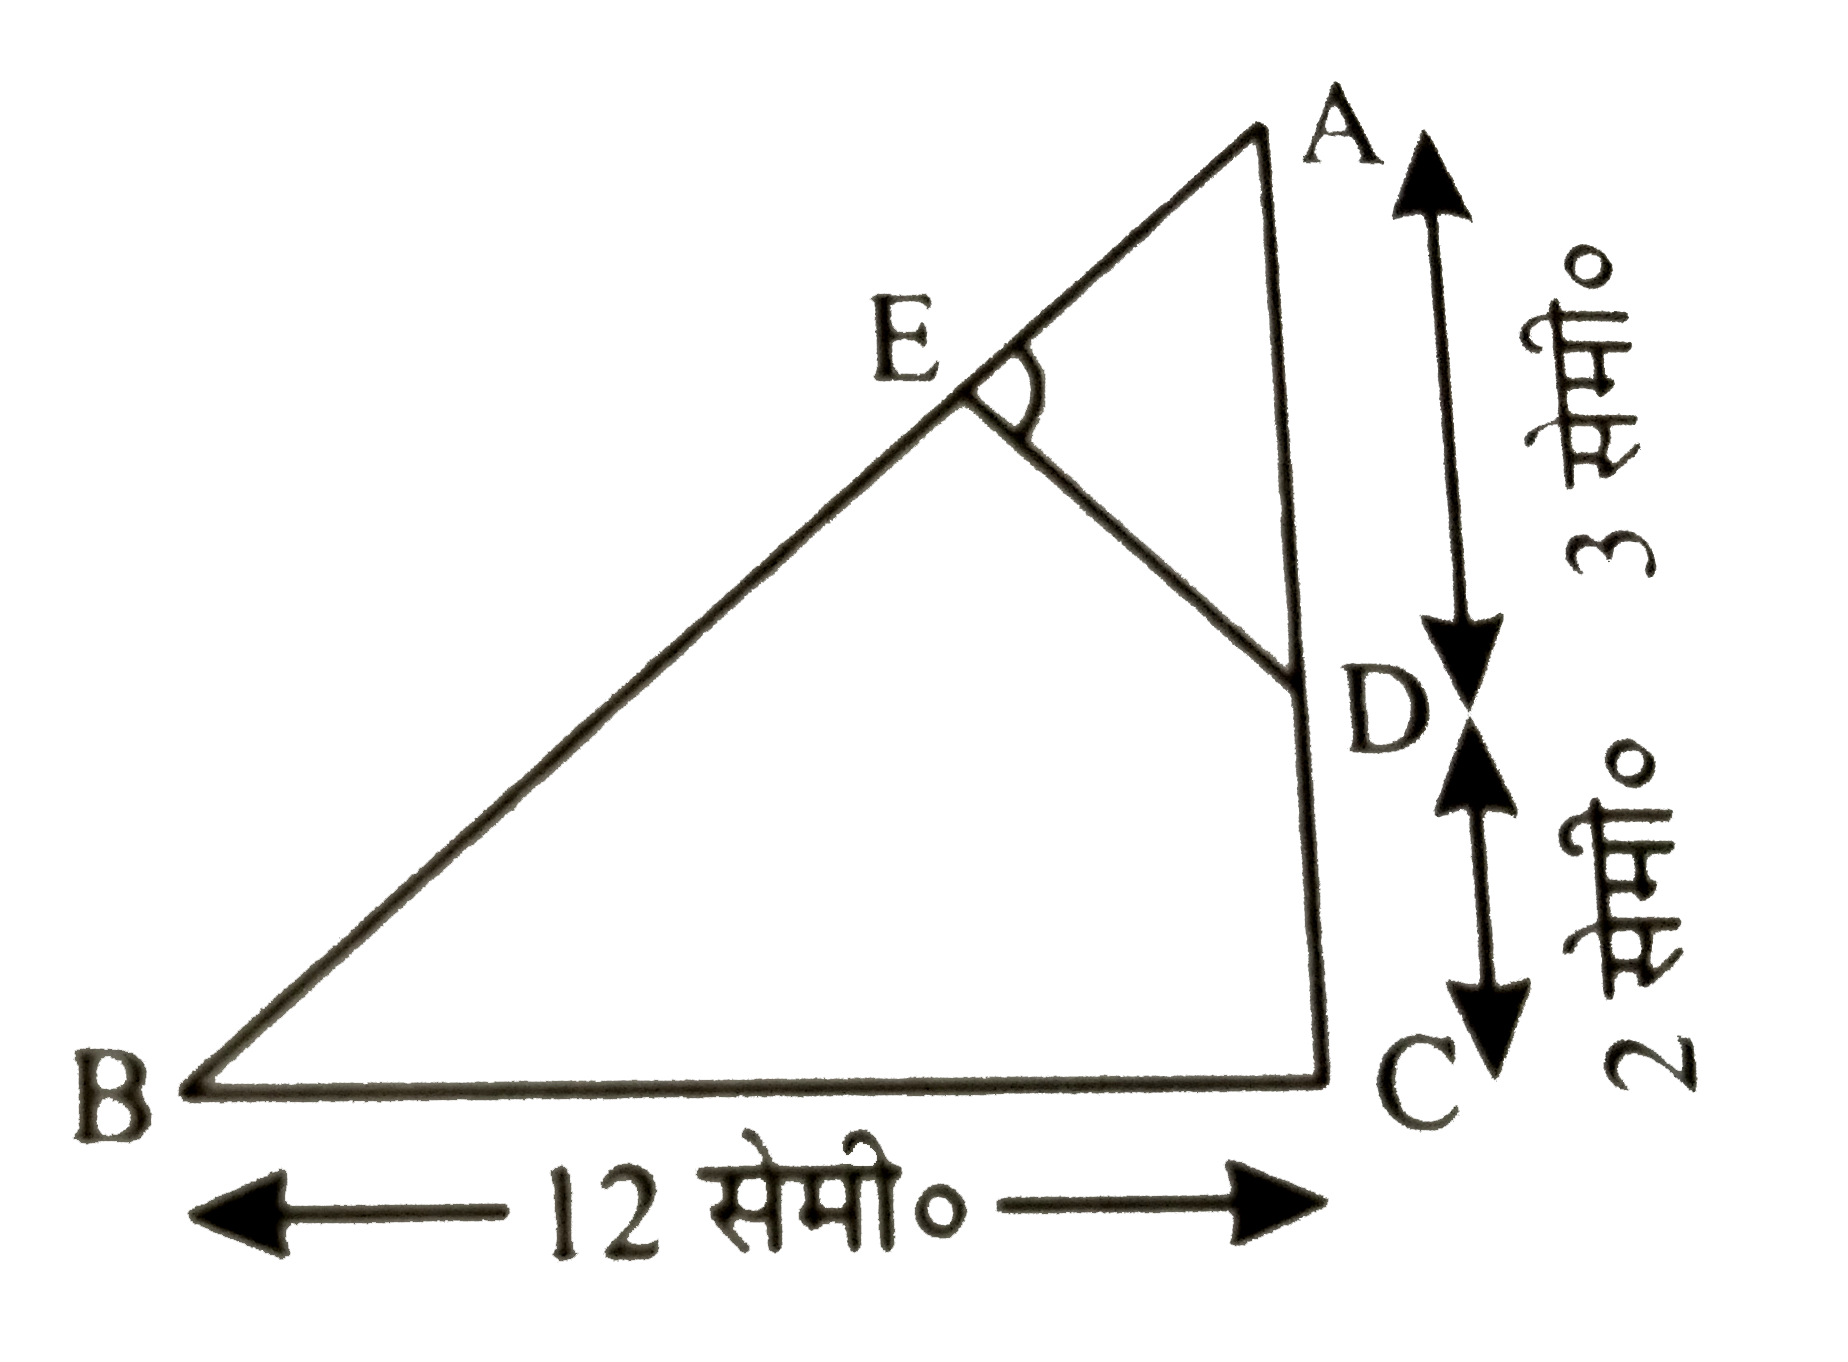 दी गई आकृति में, एक त्रिभुज ABC है जो C पर समकोण है तथा DE bot AB है तो | सिद्ध कीजिए कि triangle ABC ~ triangle ADE तथा AE और DE की लम्बाई ज्ञात कीजिए |